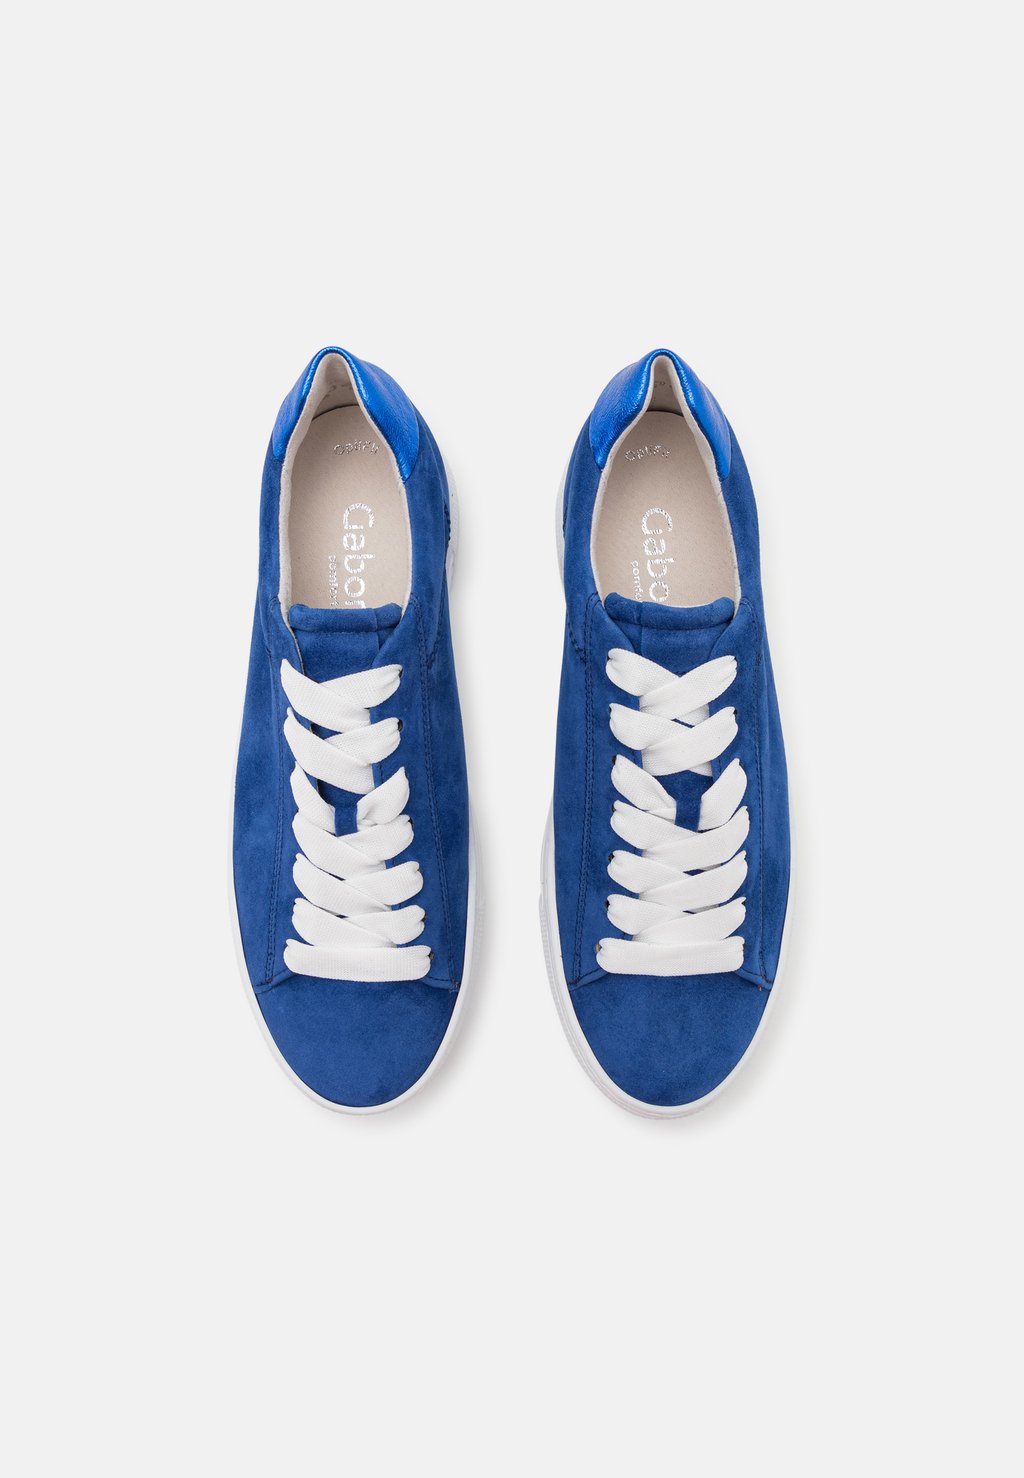 Низкие кроссовки Gabor Comfort, темно-синие